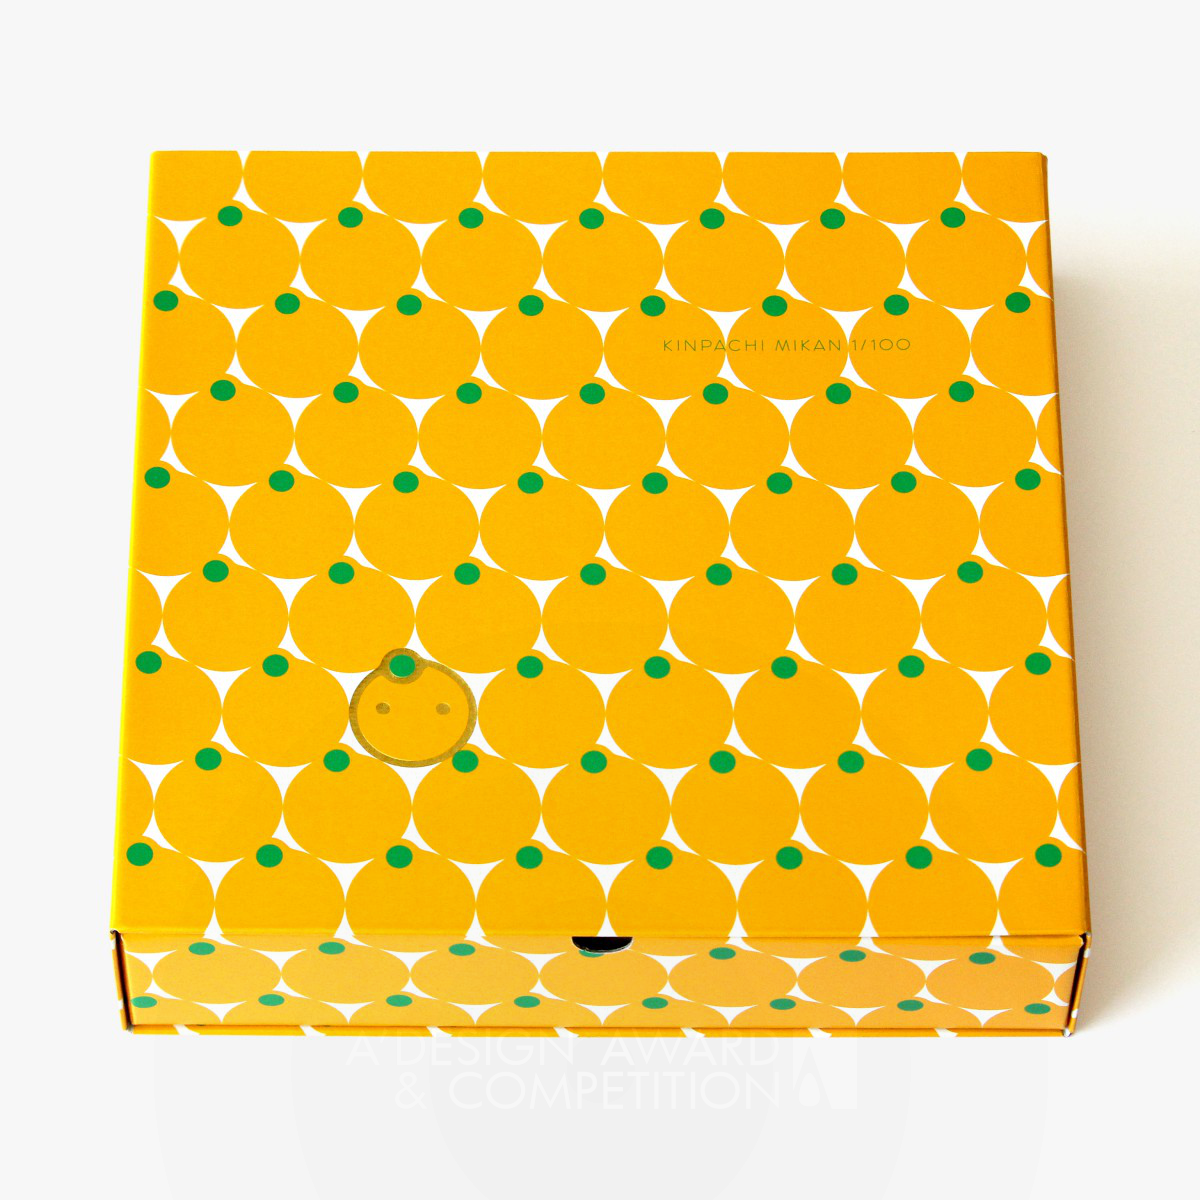 Kinpachimikan Orange gift box by Koichi Sugiyama and Minako Endo